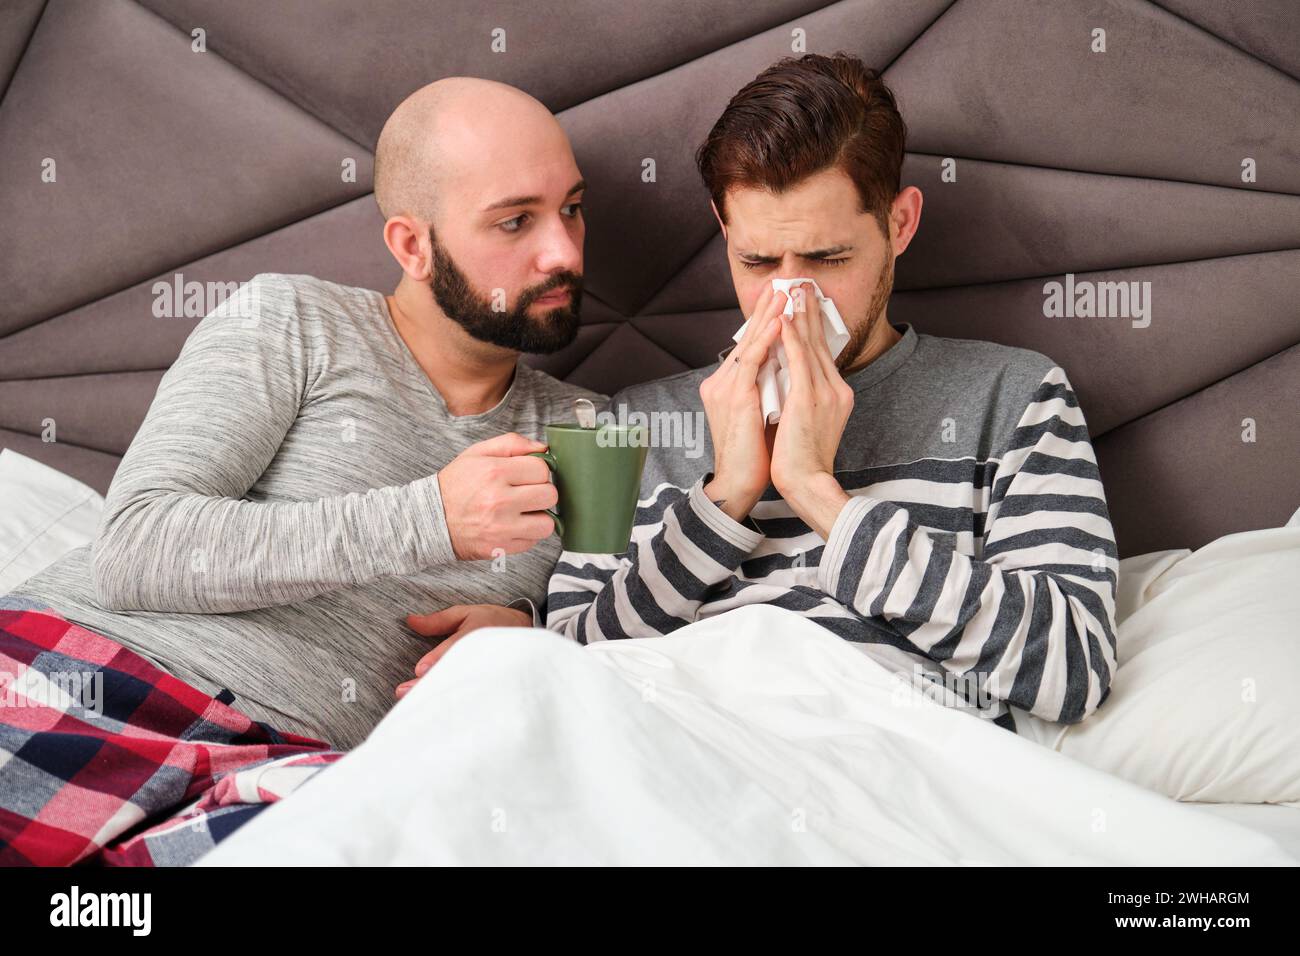 Ein Mann, der sich die Nase in ein Taschentuch bläst, während sein Freund sich um ihn kümmert. Stockfoto